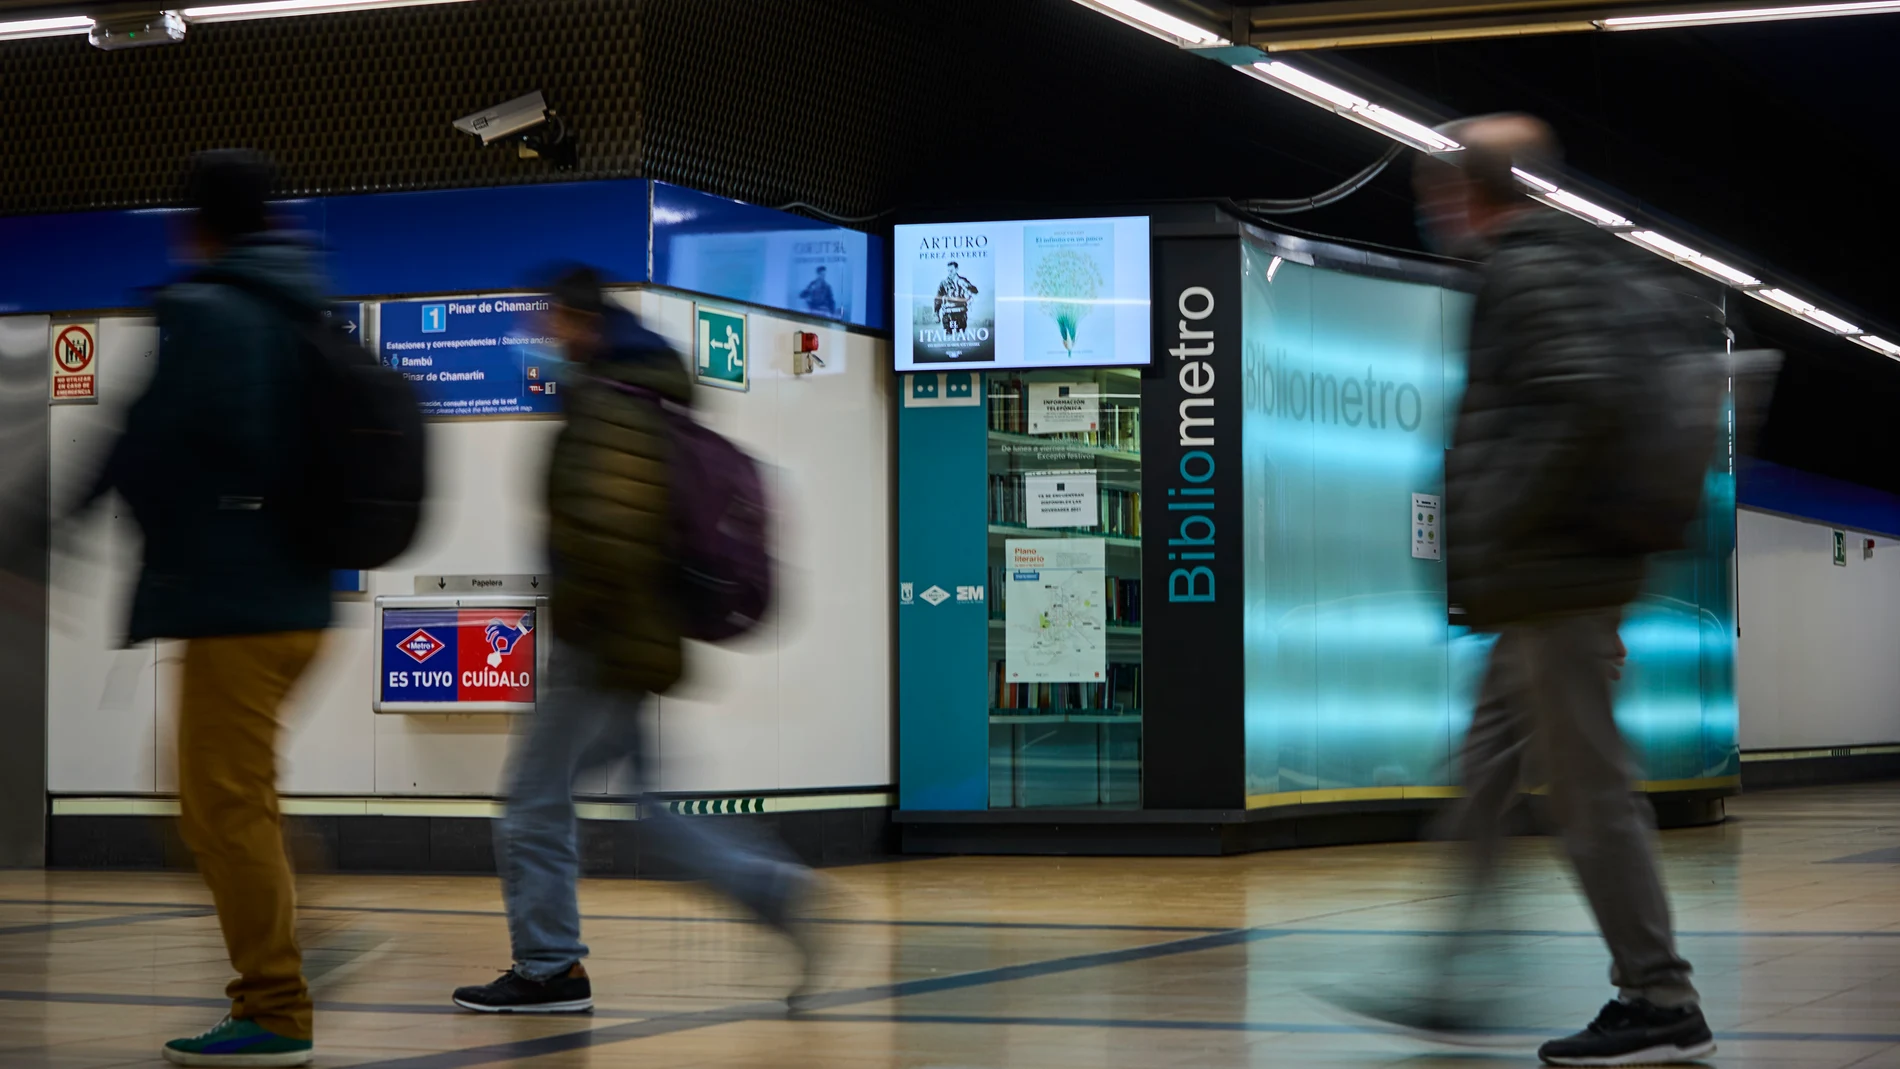 La Comunidad de Madrid acerca la literatura a los viajeros de metro con bibliotecas públicas en estaciones.